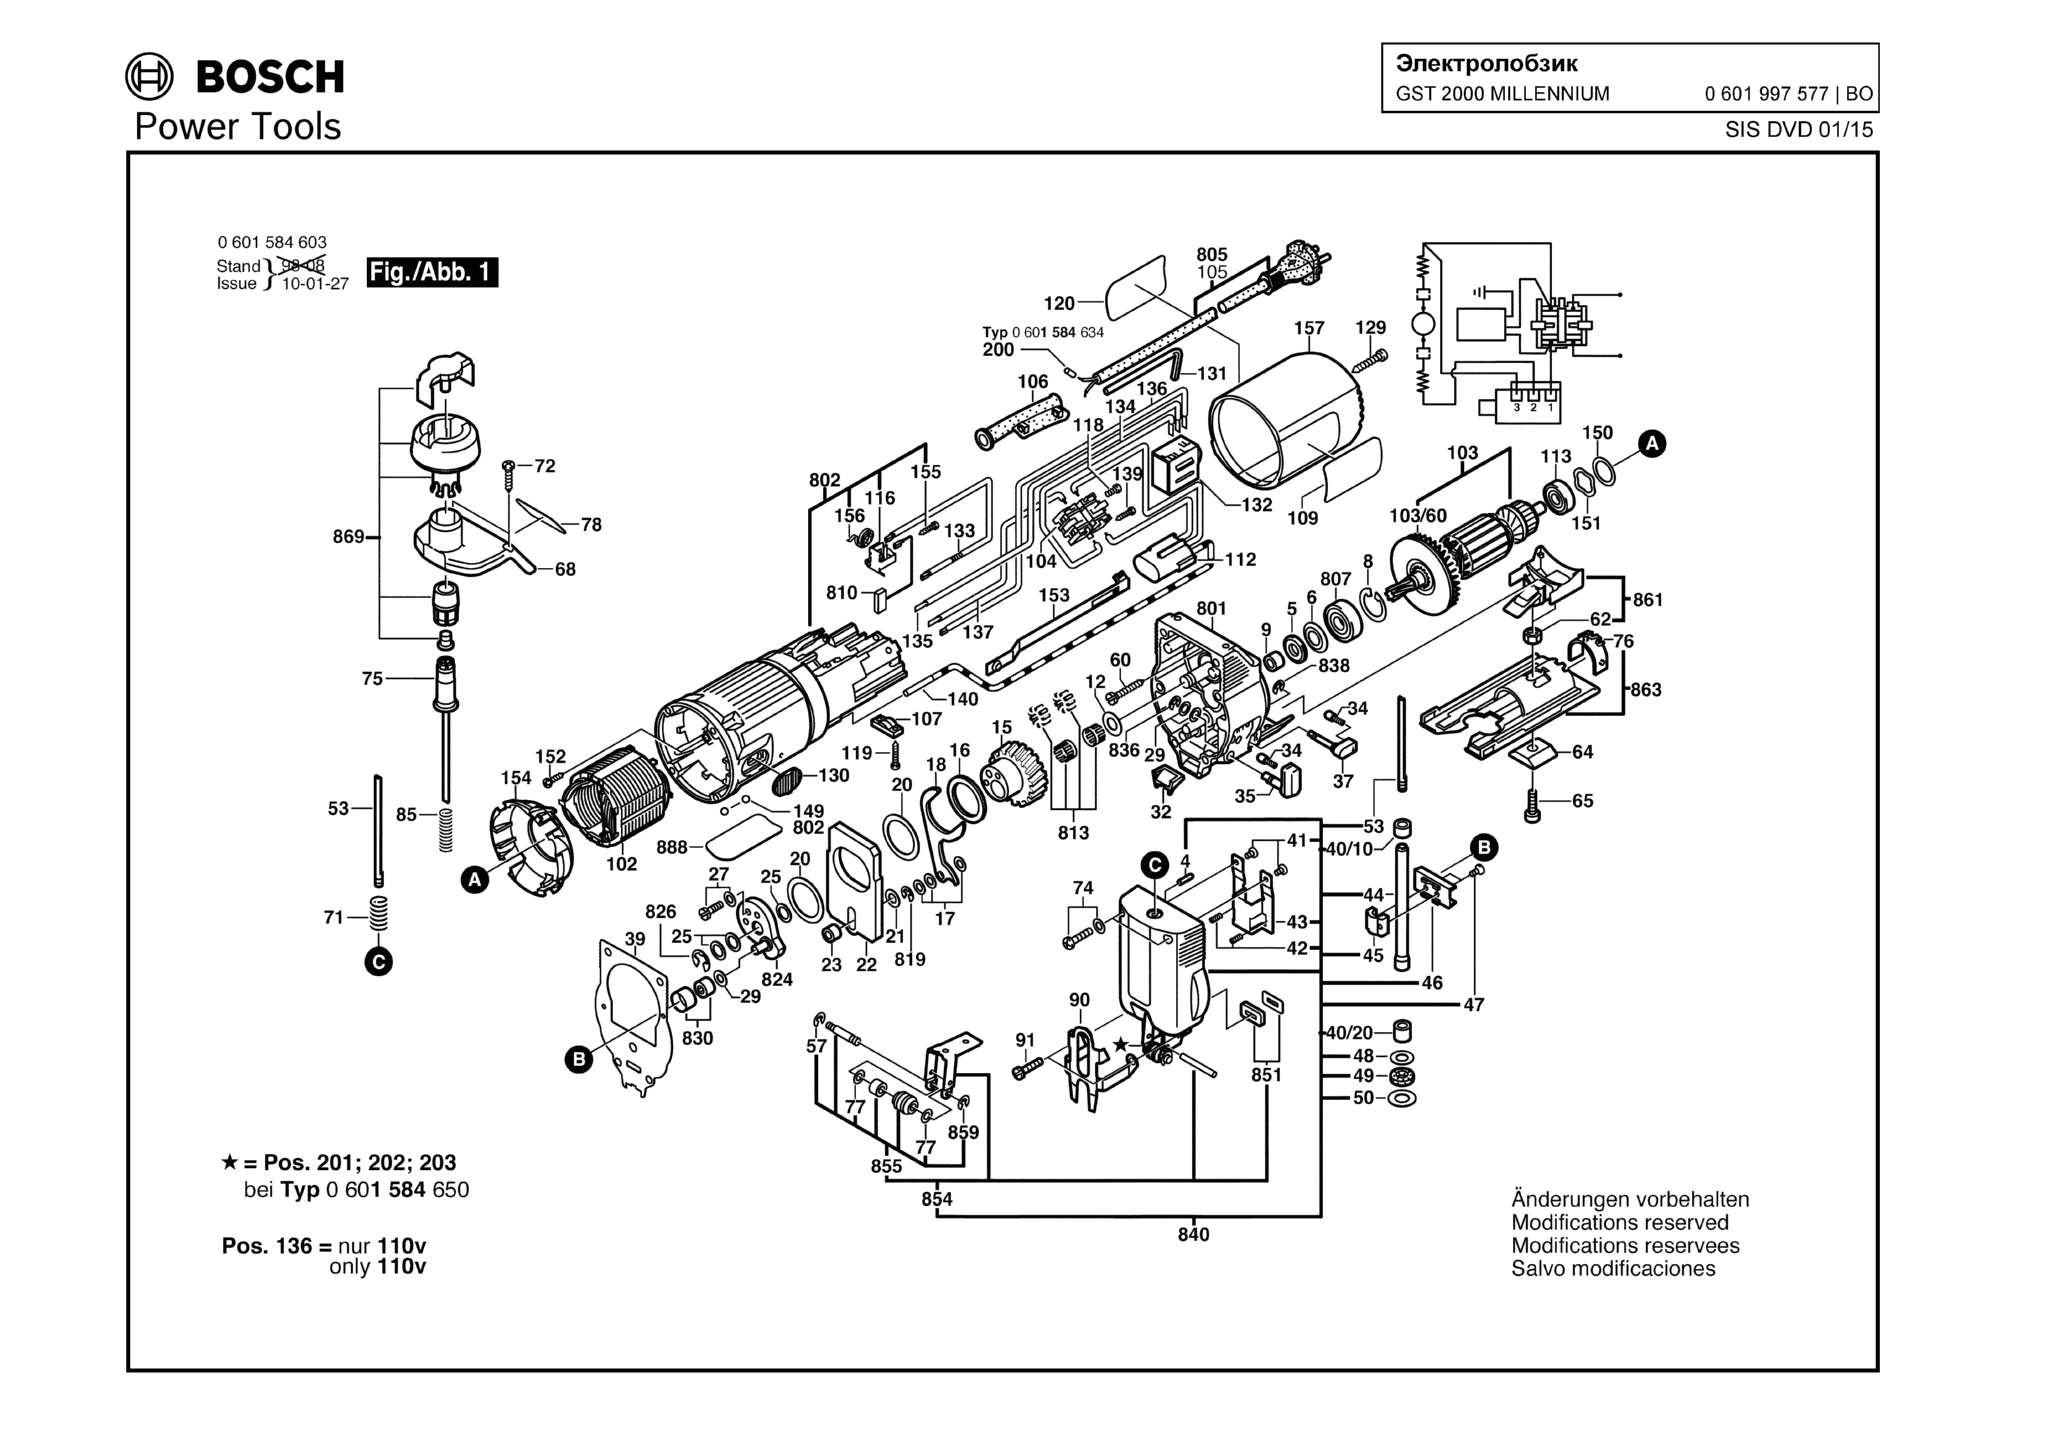 Запчасти, схема и деталировка Bosch GST 2000 MILLENNIUM (ТИП 0601997577)